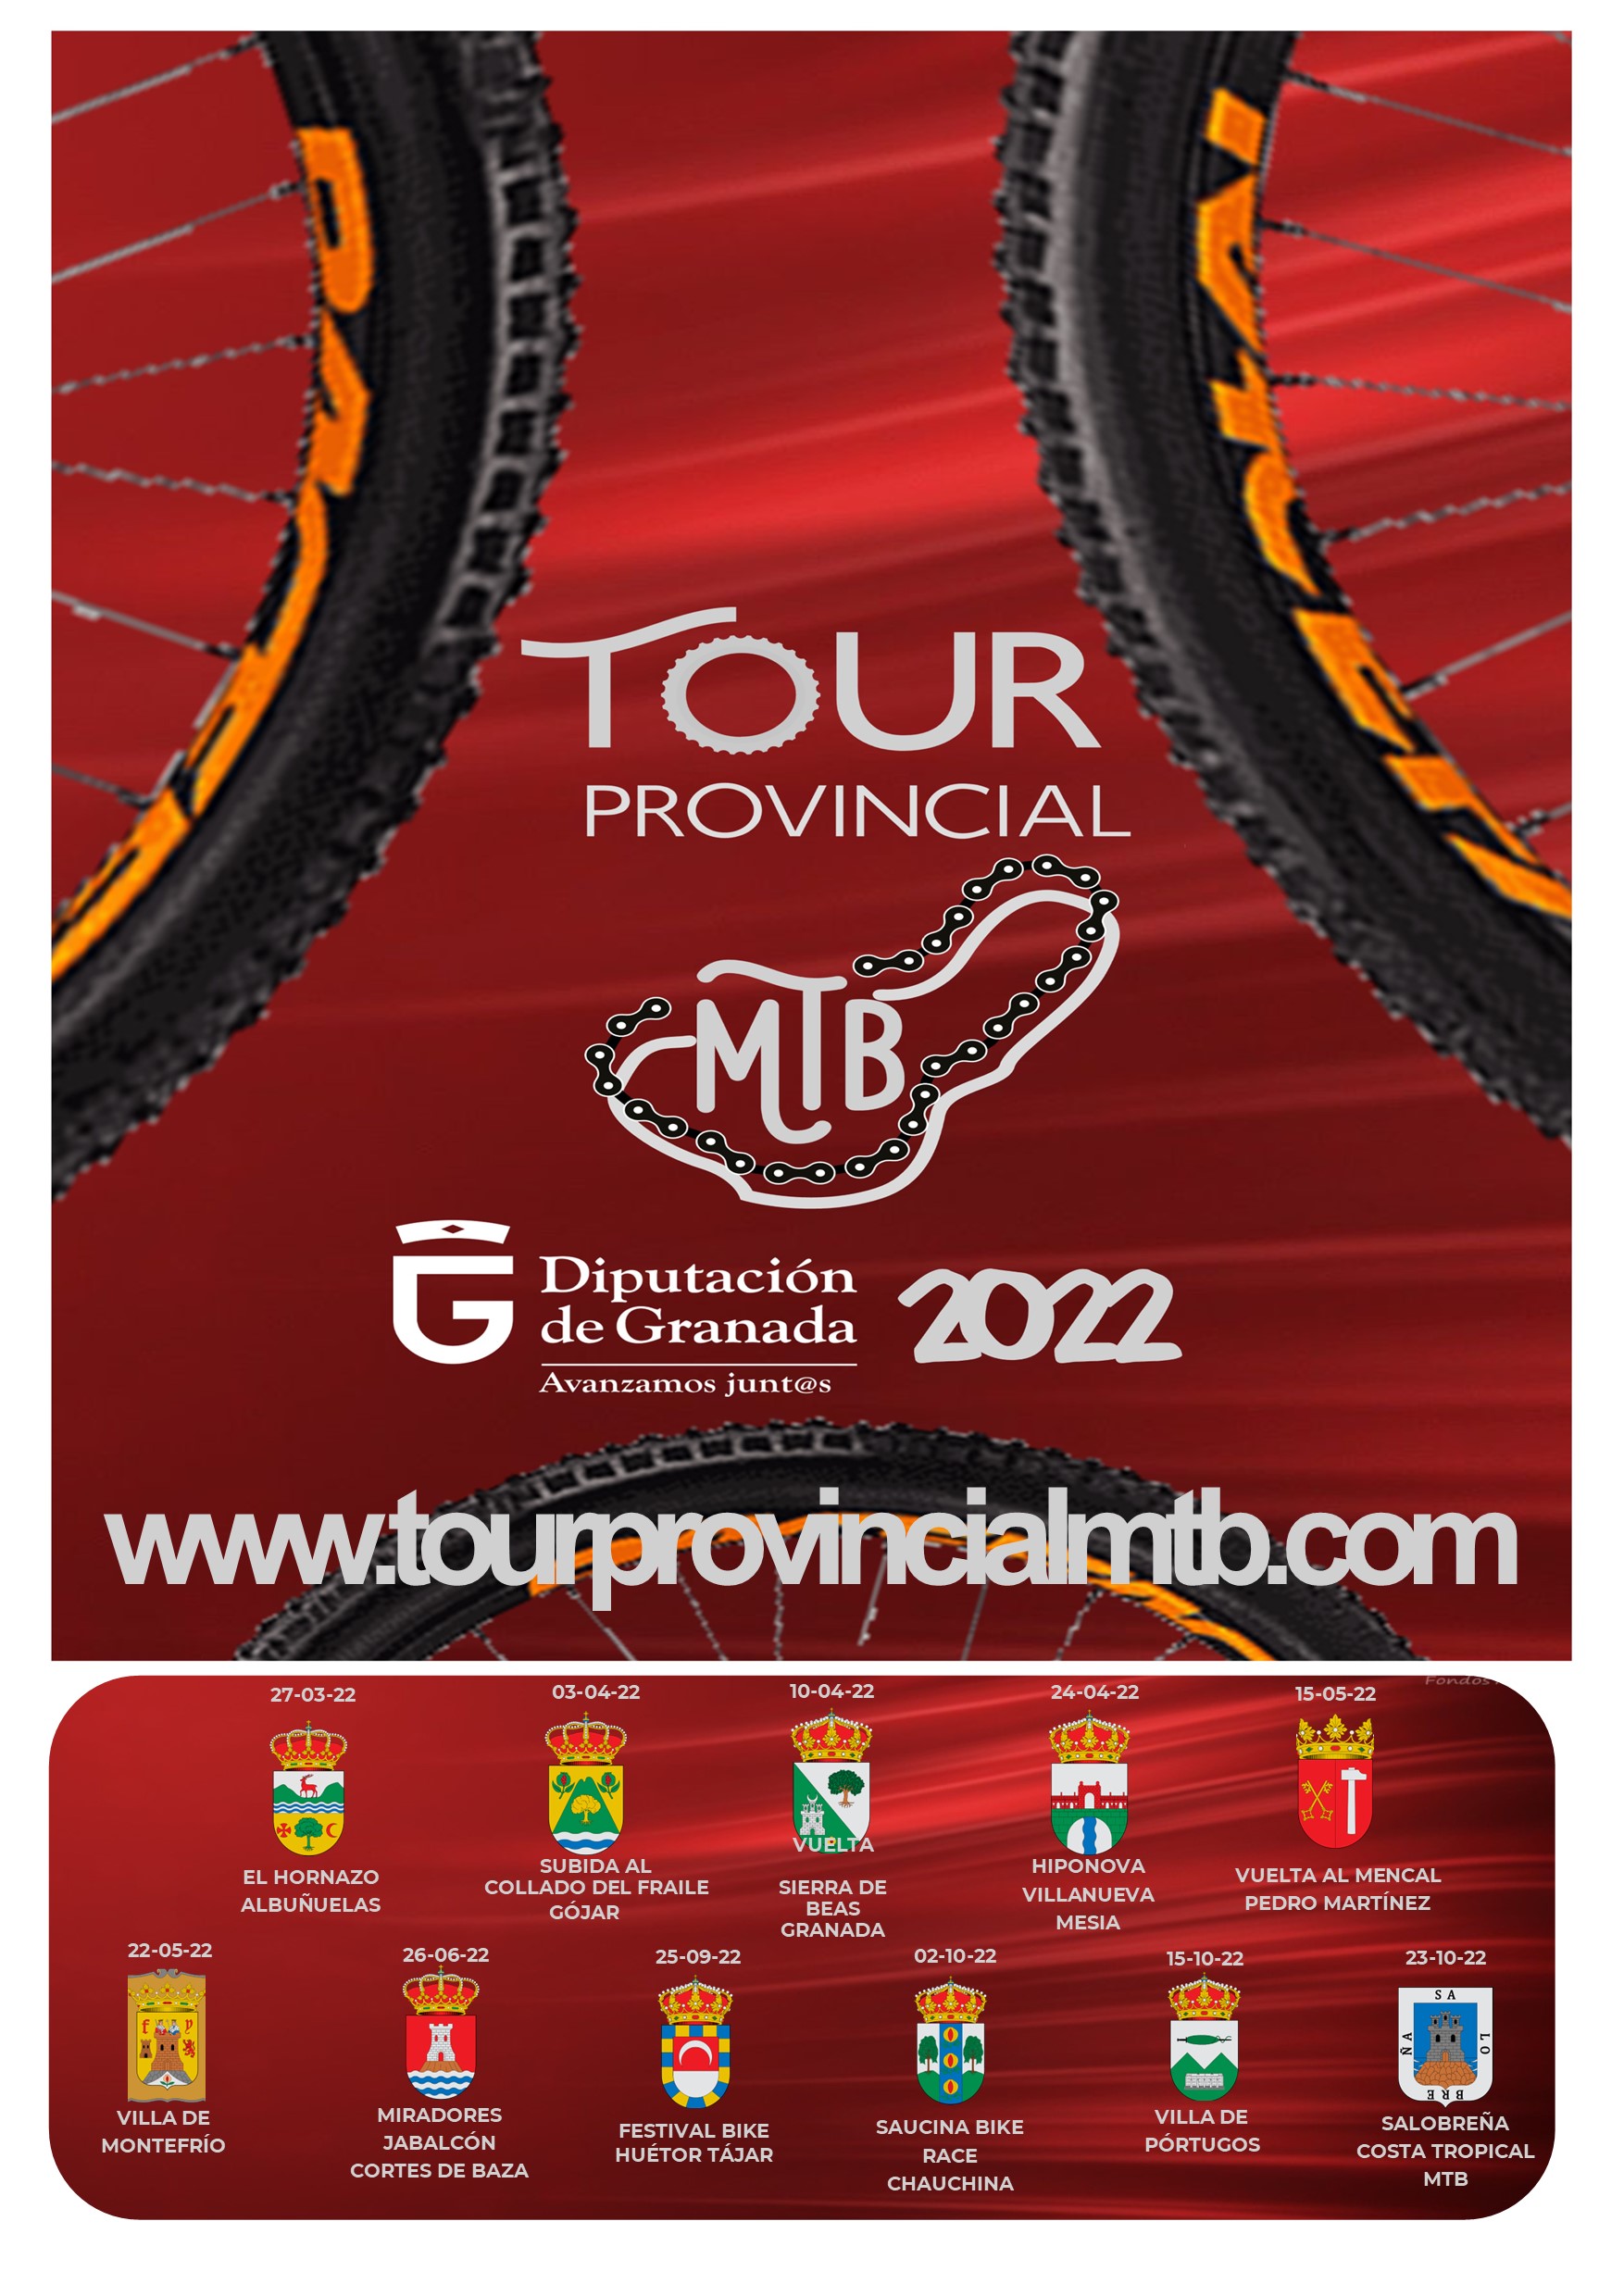 TOUR PROVINCIAL MTB 2022 - SALOBREÑA COSTA TROPICAL MTB